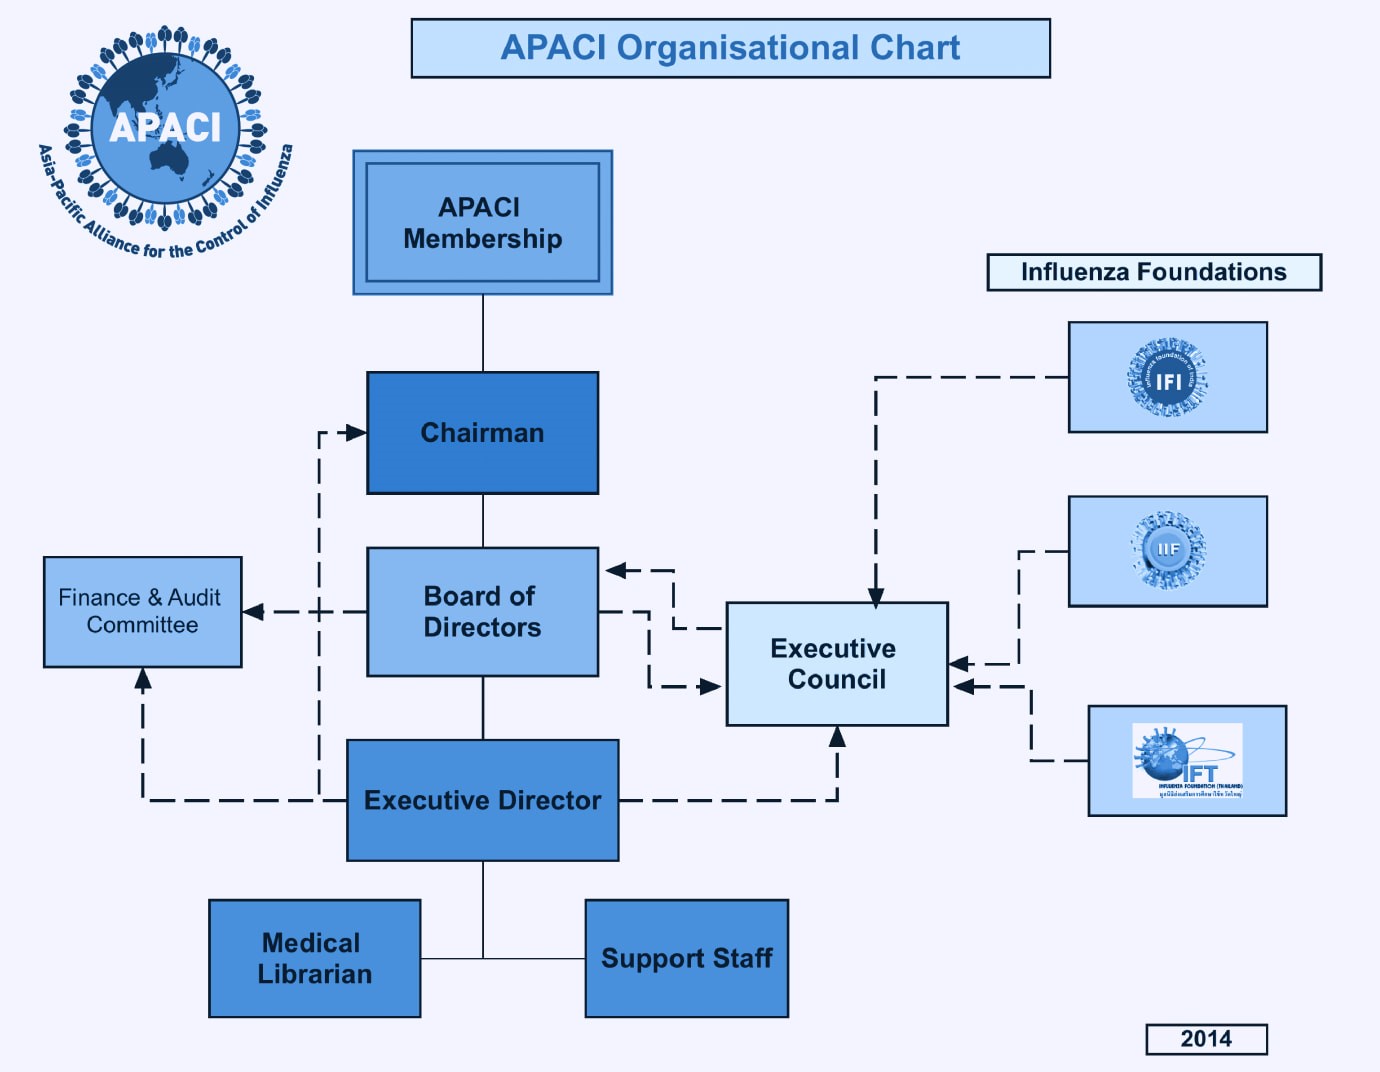 APACI organizational chart